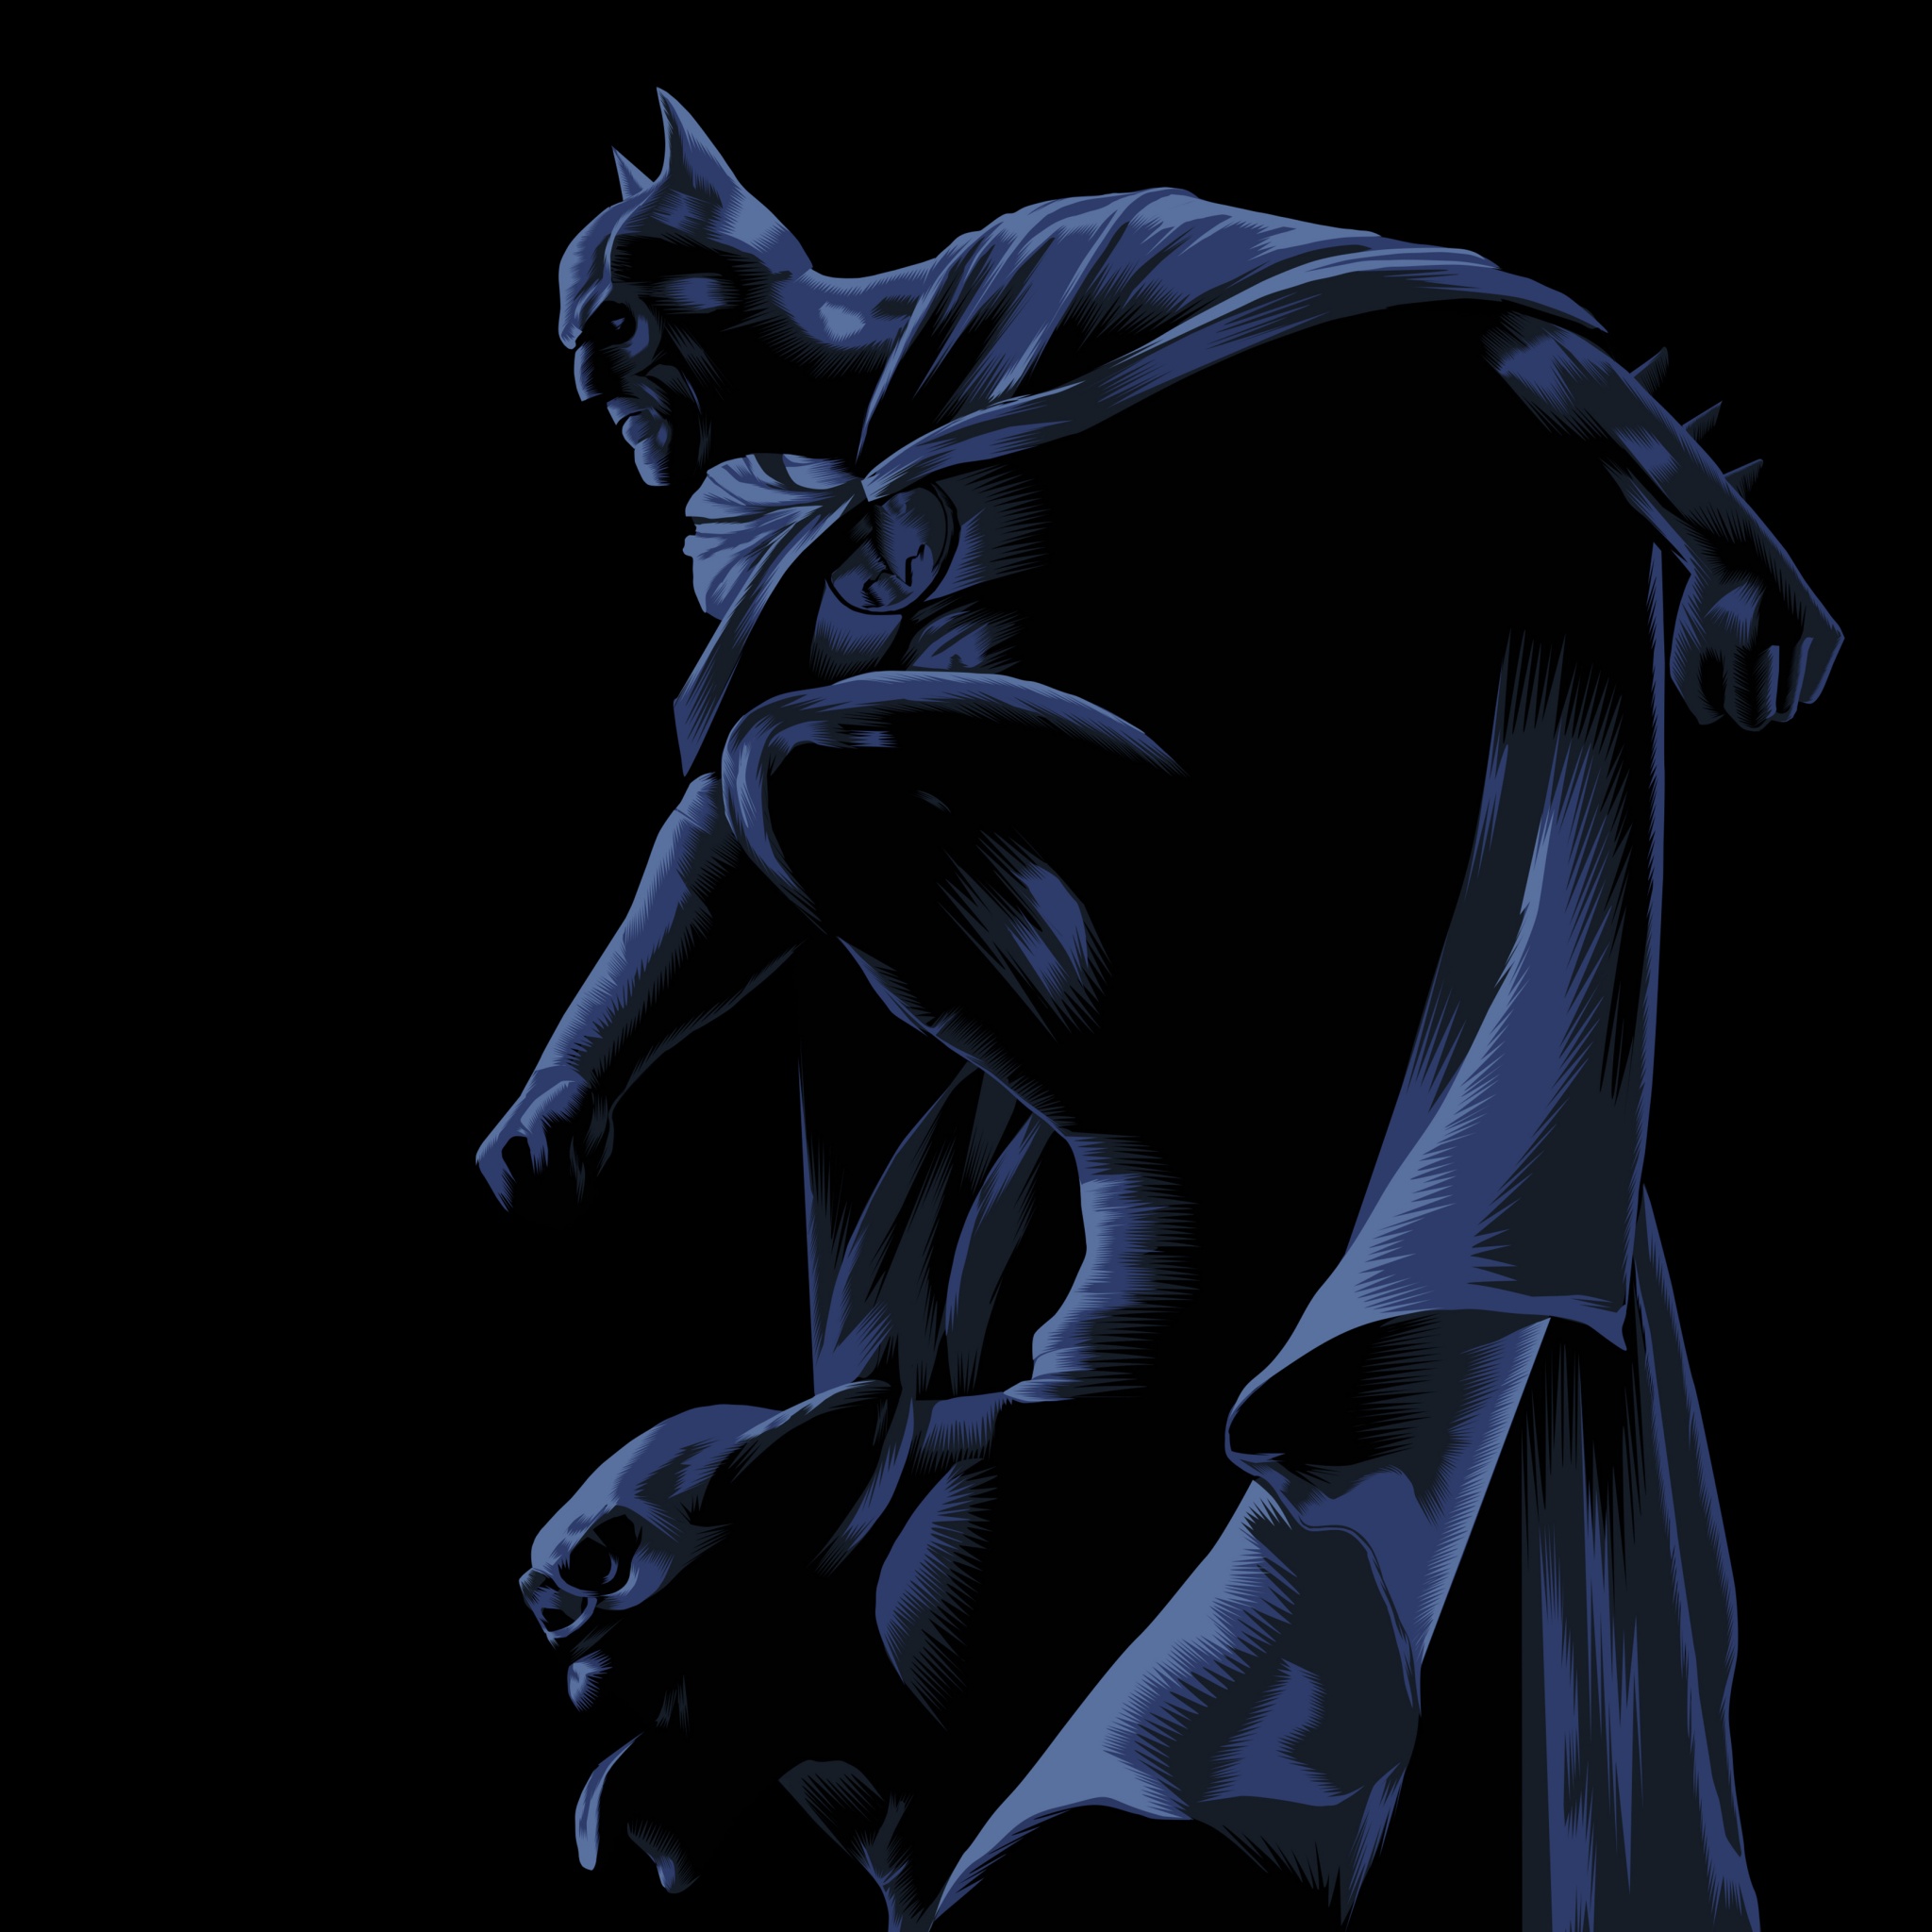 Backgrounds Batman - Wallpaper Cave